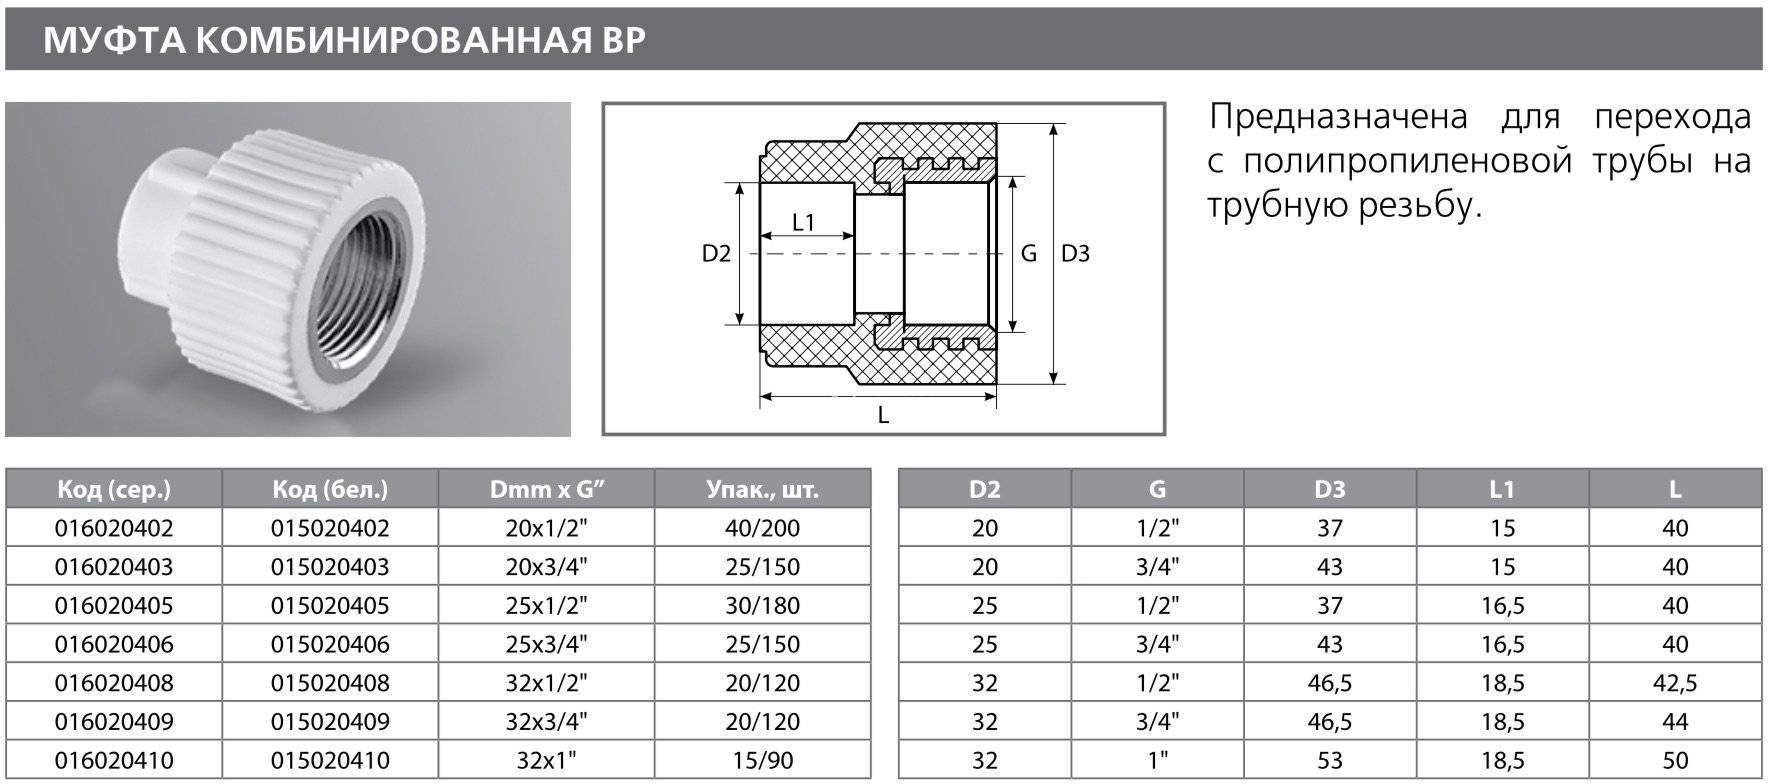 Резьба 2f. Муфта переходная d-d1 40-20 полипропилен. Муфта полипропилен 32 наружный диаметр. Муфта соединитель на ППР диаметр 32. Муфта комбинированная полипропилен 2 дюйма.